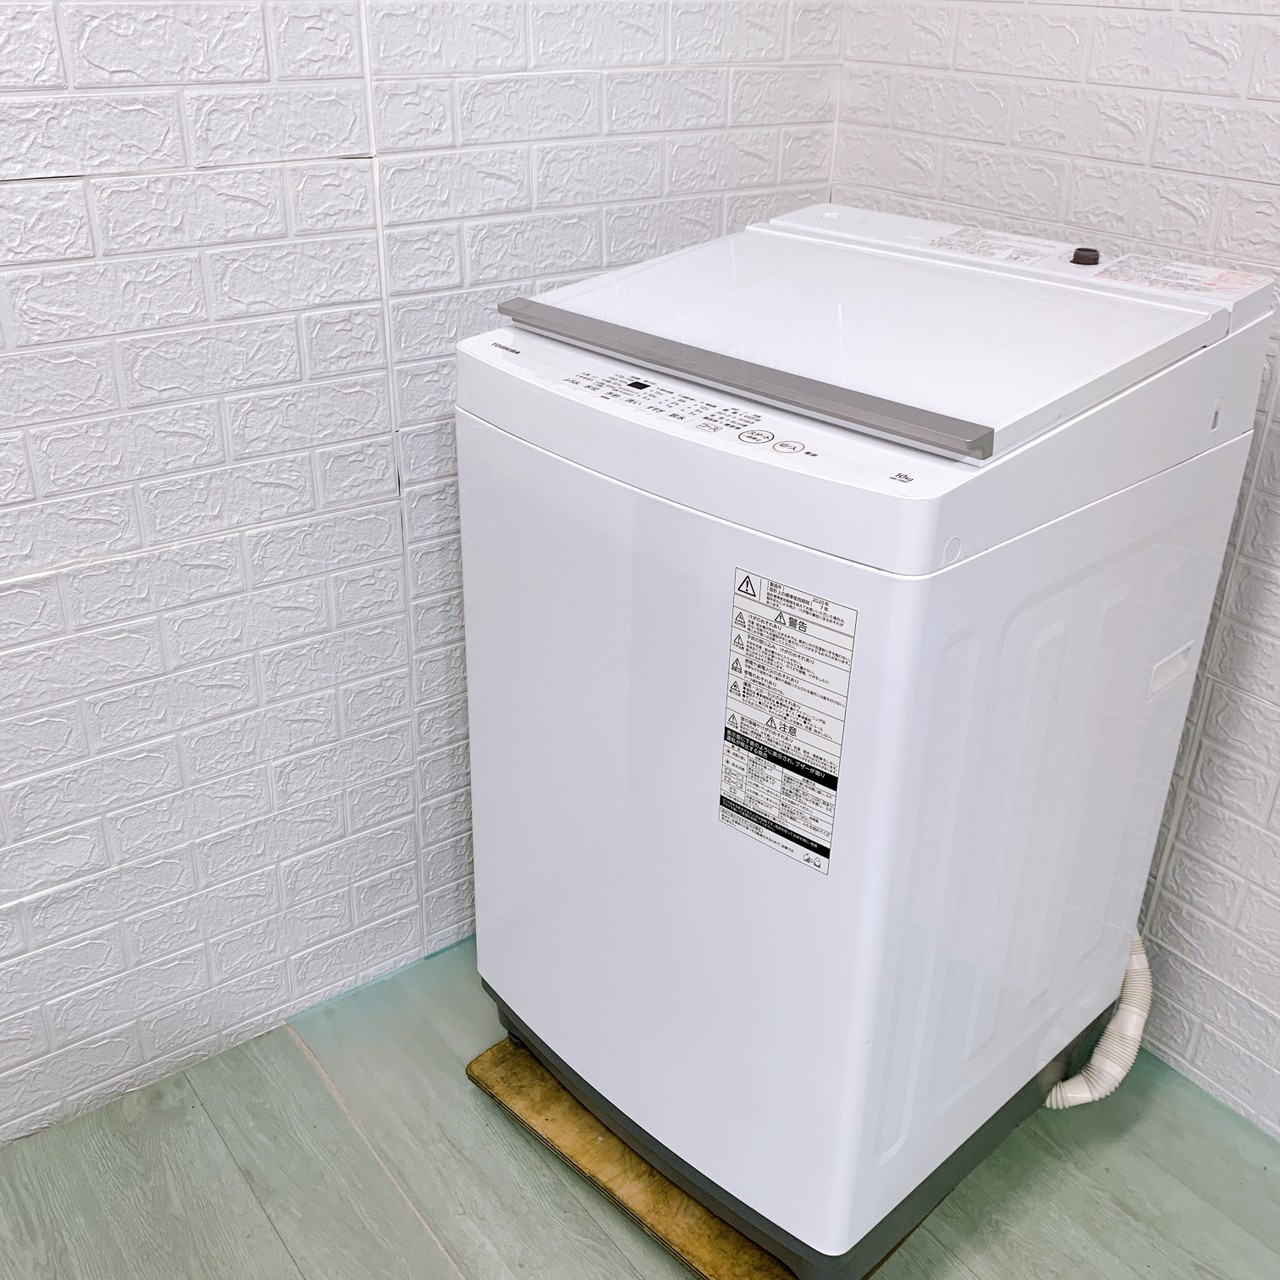 東芝 全自動洗濯機 AW-10M7 2020年製 単身用家電 新生活